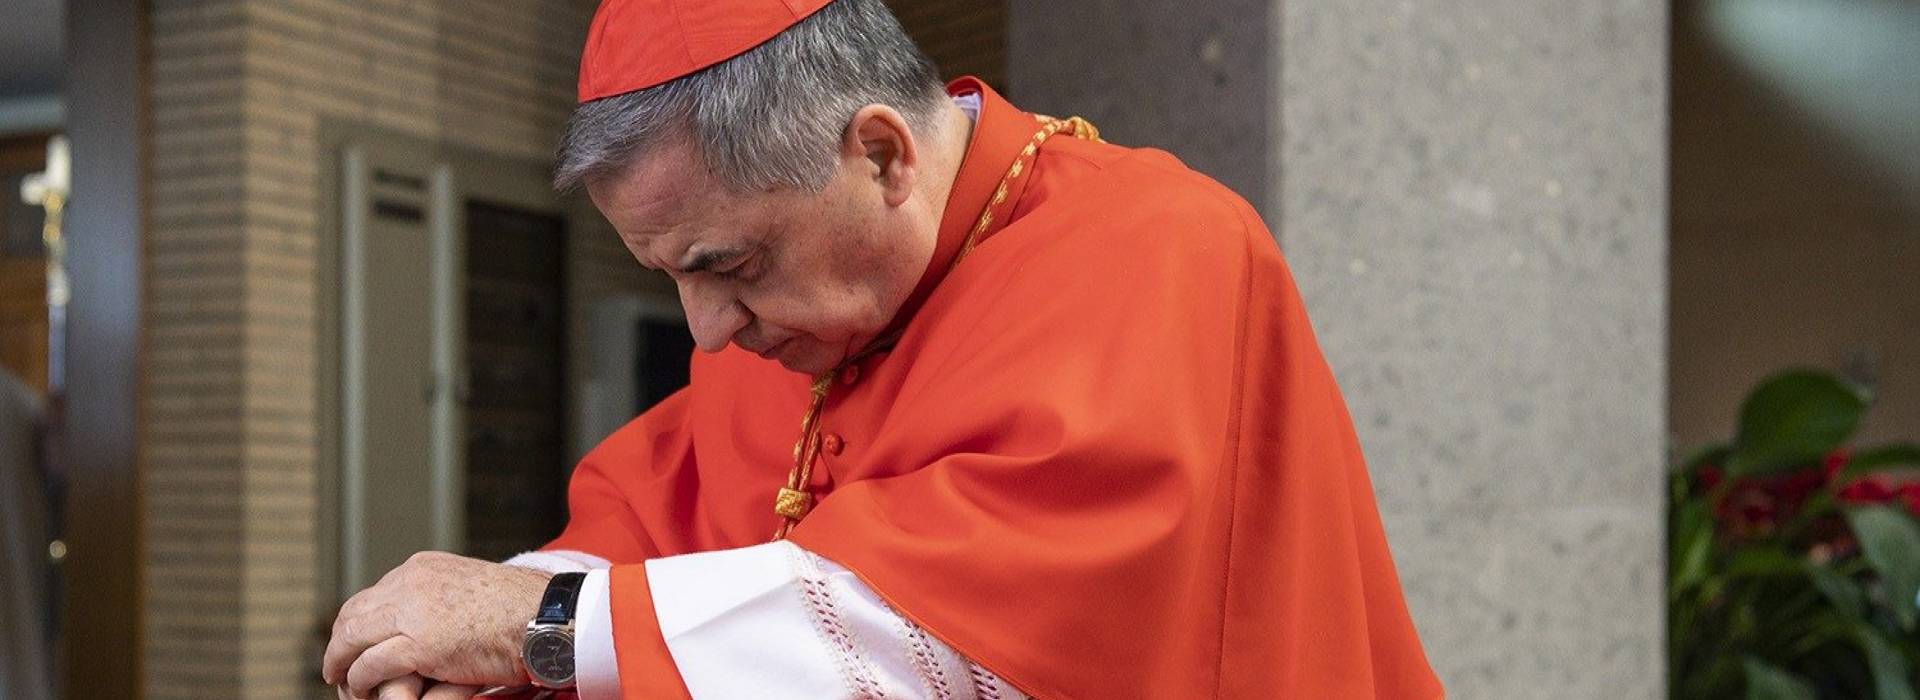 Soldi dello Ior e della Cei ai familiari del cardinale Angelo Becciu: perquisizioni a Roma e Sardegna